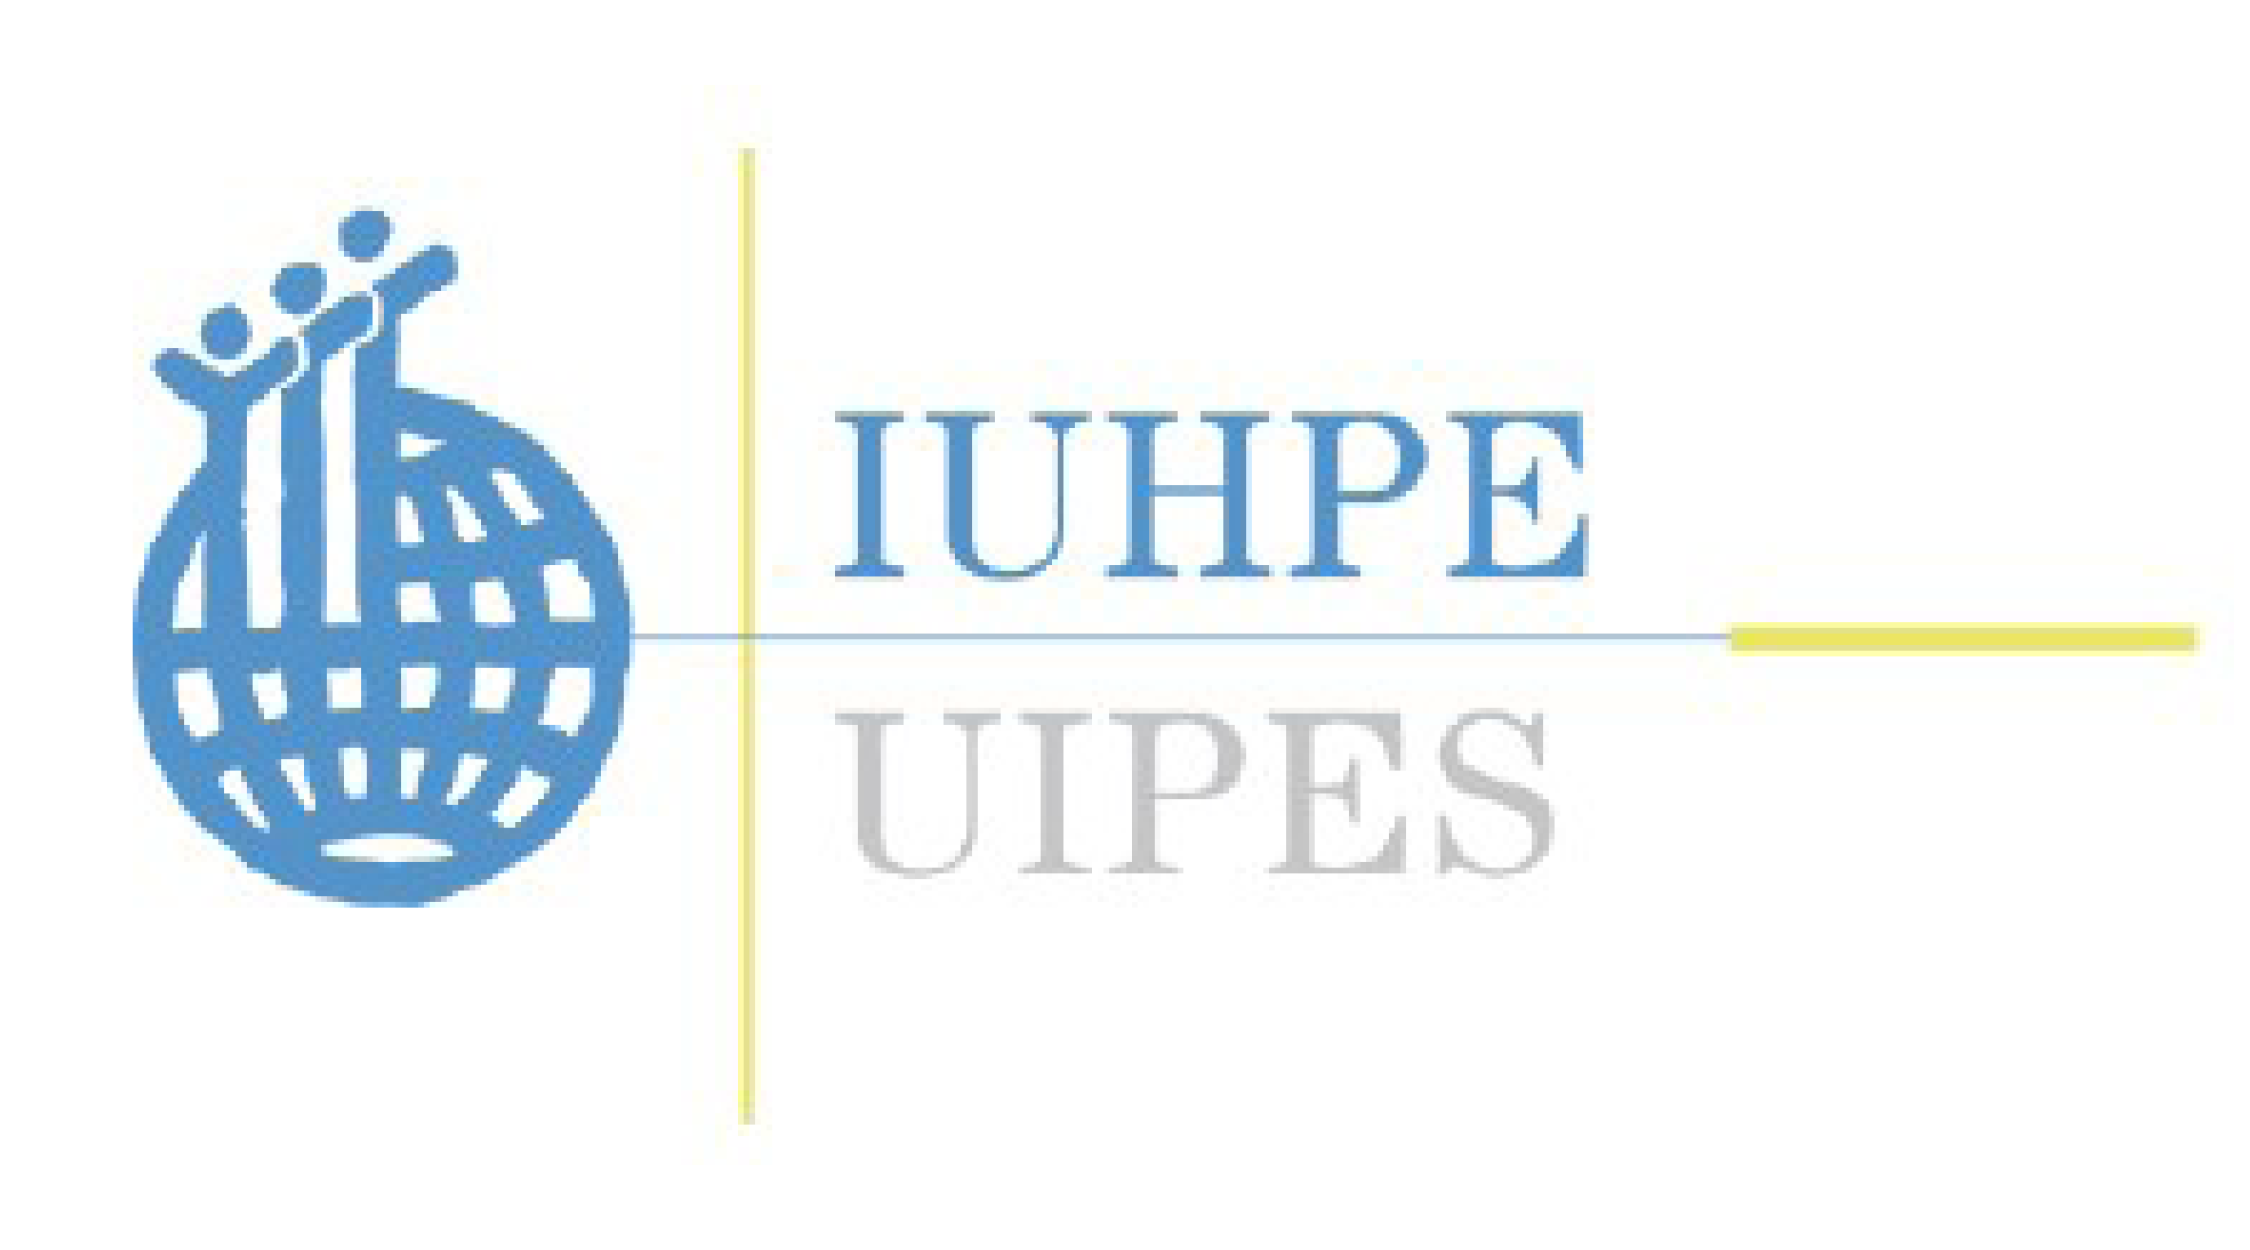 IUHPE logo